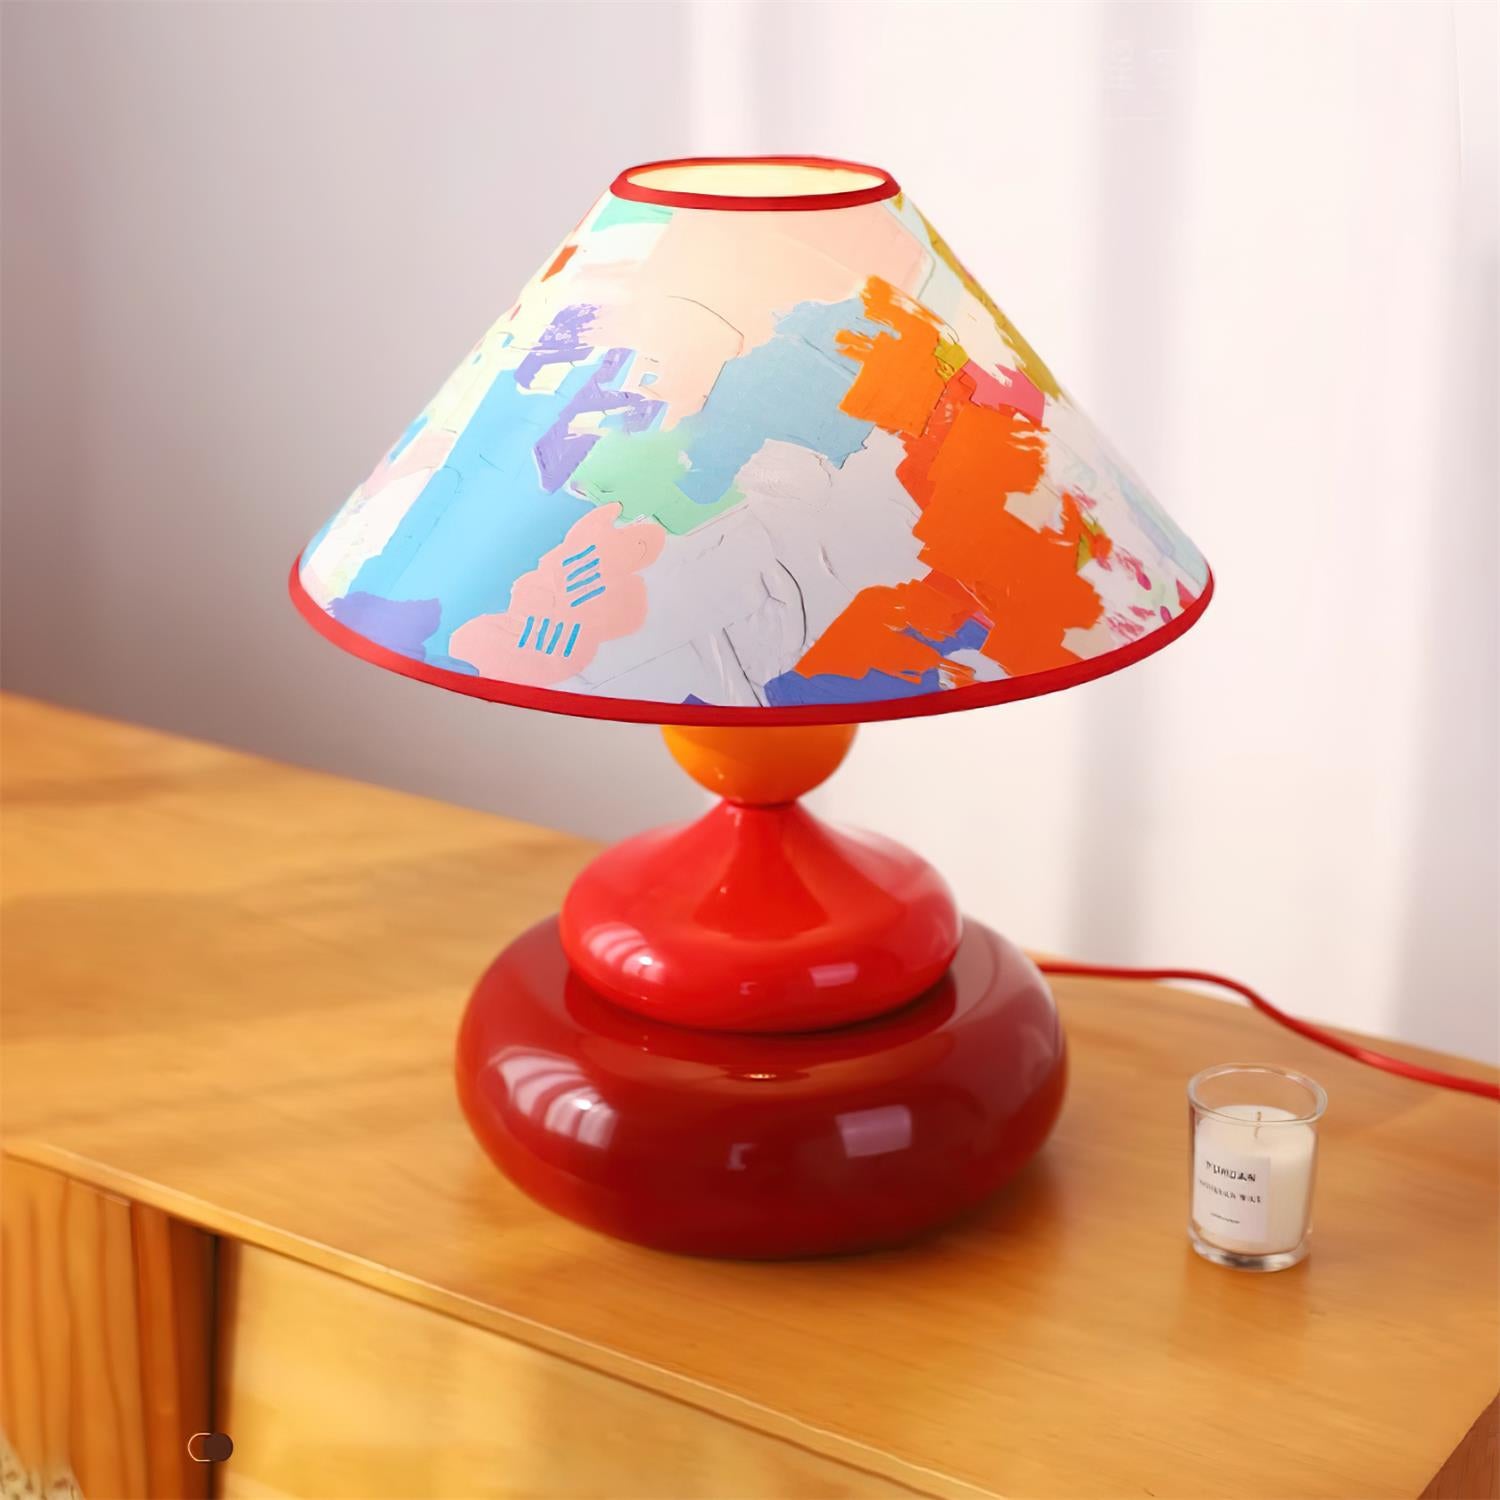 Paloma Table Lamp